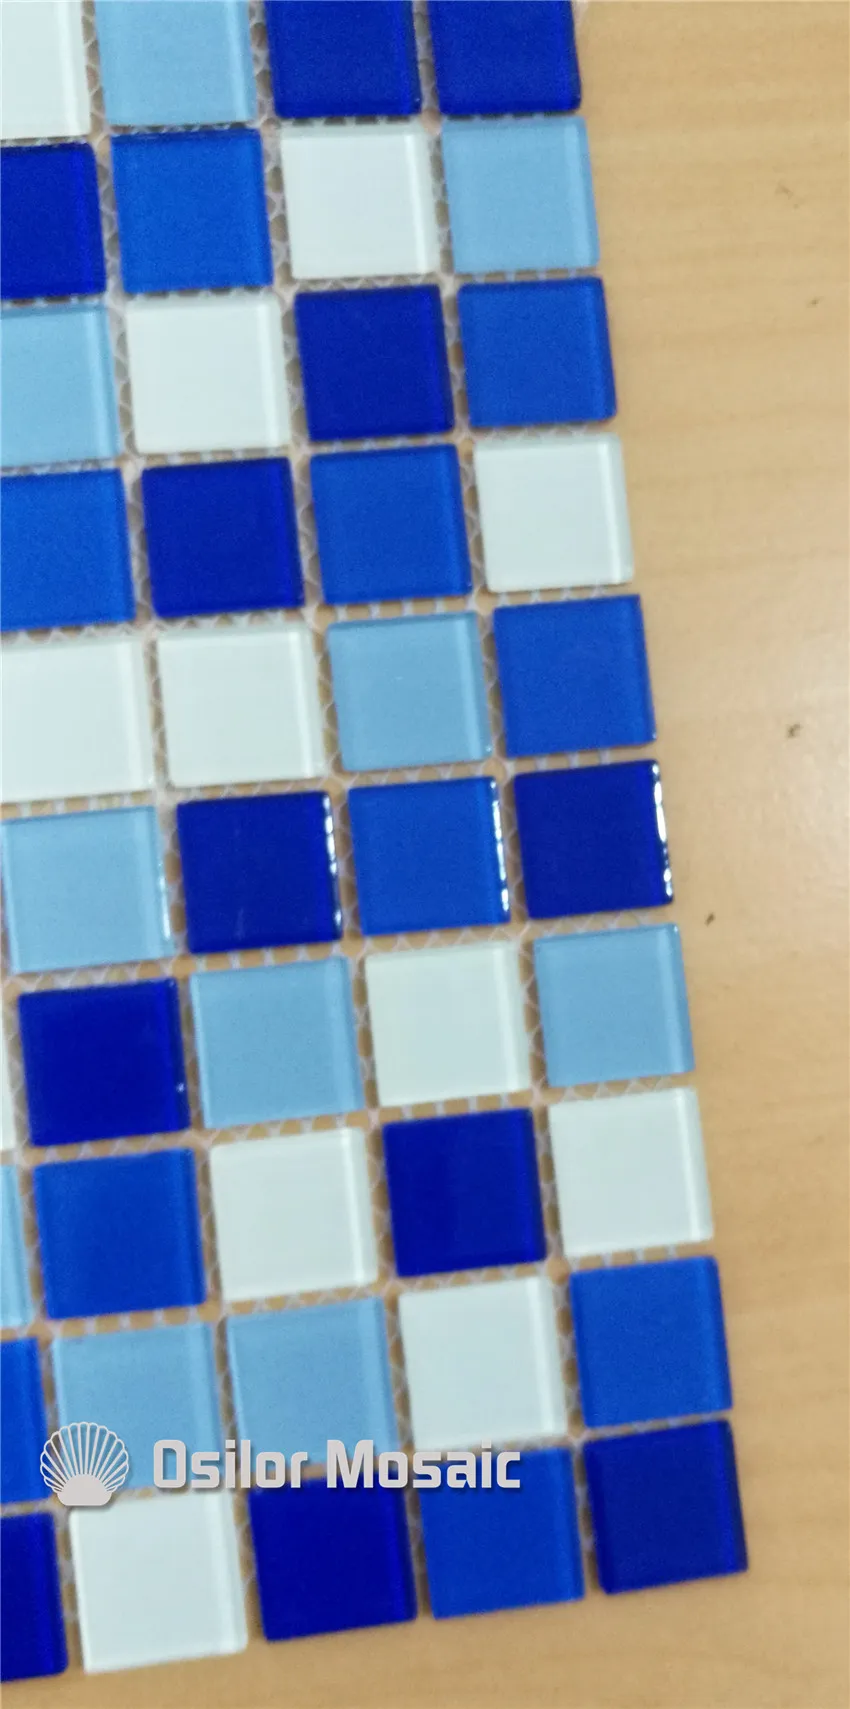 Tile de mosaïque en cristal et en verre bleu mélangé pour salle de bain et cuisine Piscine de piscine Tile 25x25 mm 4 mètres carrés par LO4212000